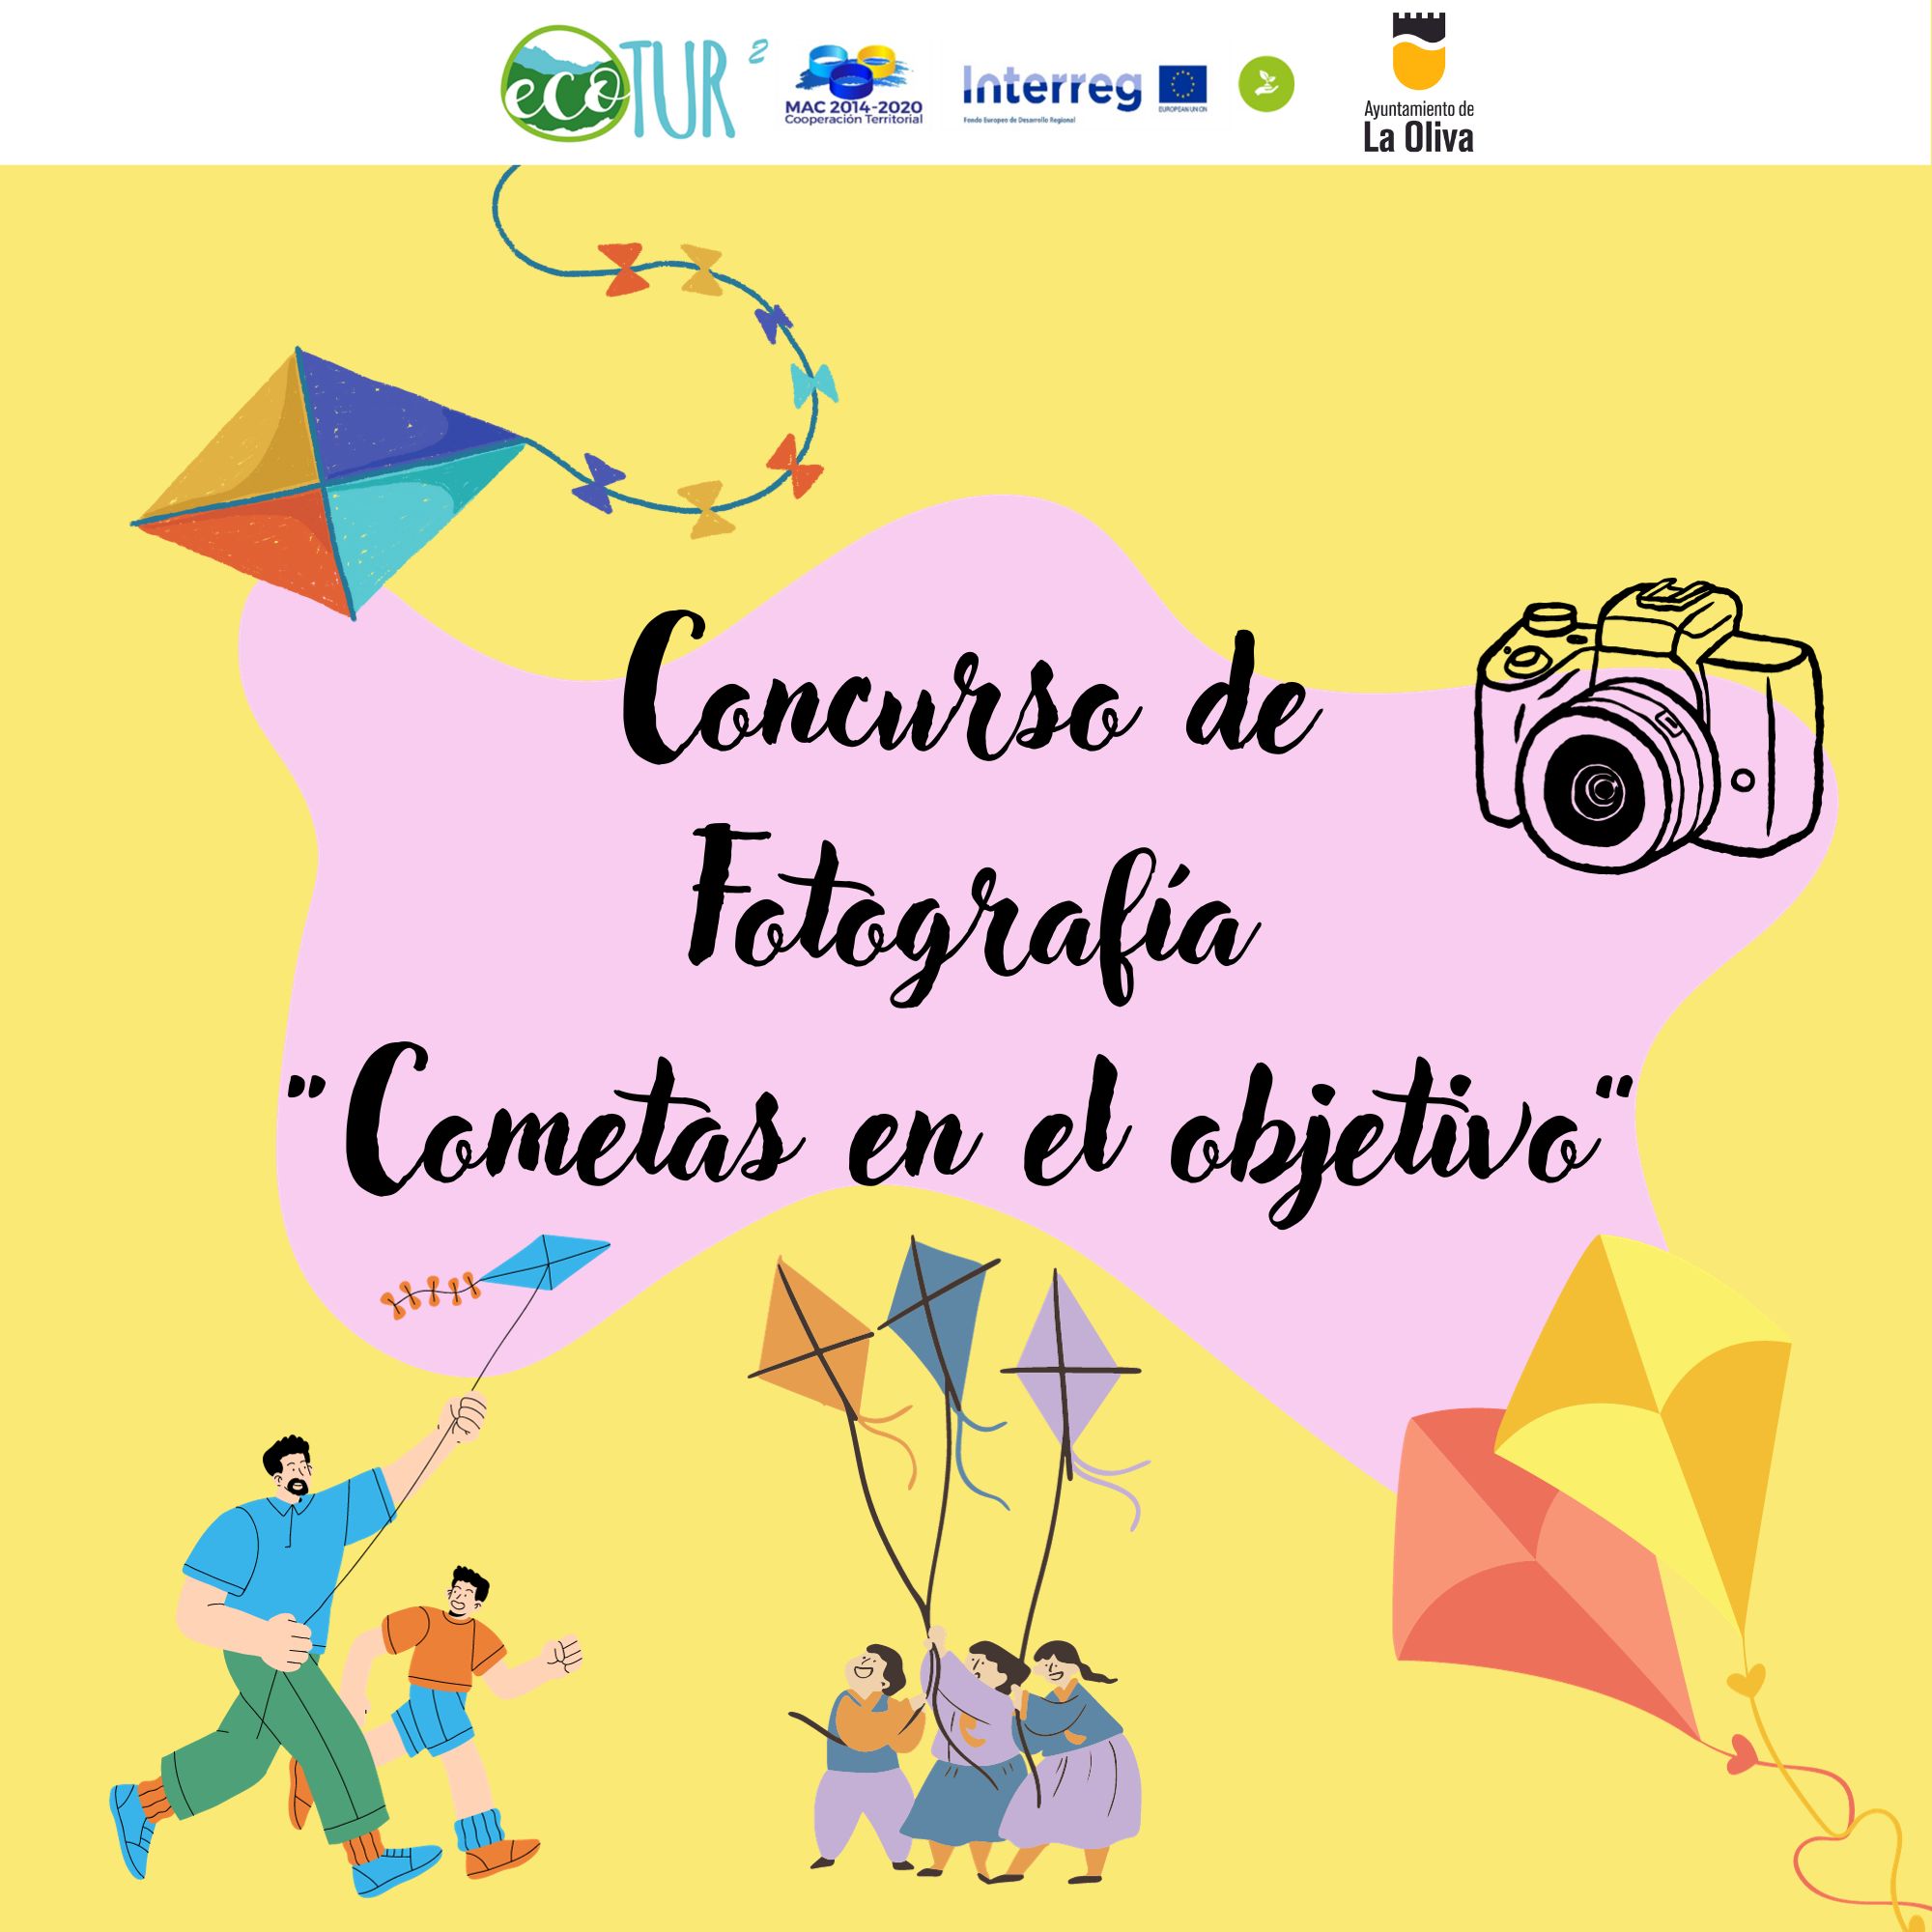 En este momento estás viendo El Ayuntamiento de La Oliva organiza el concurso de fotografía “Cometas en el objetivo”